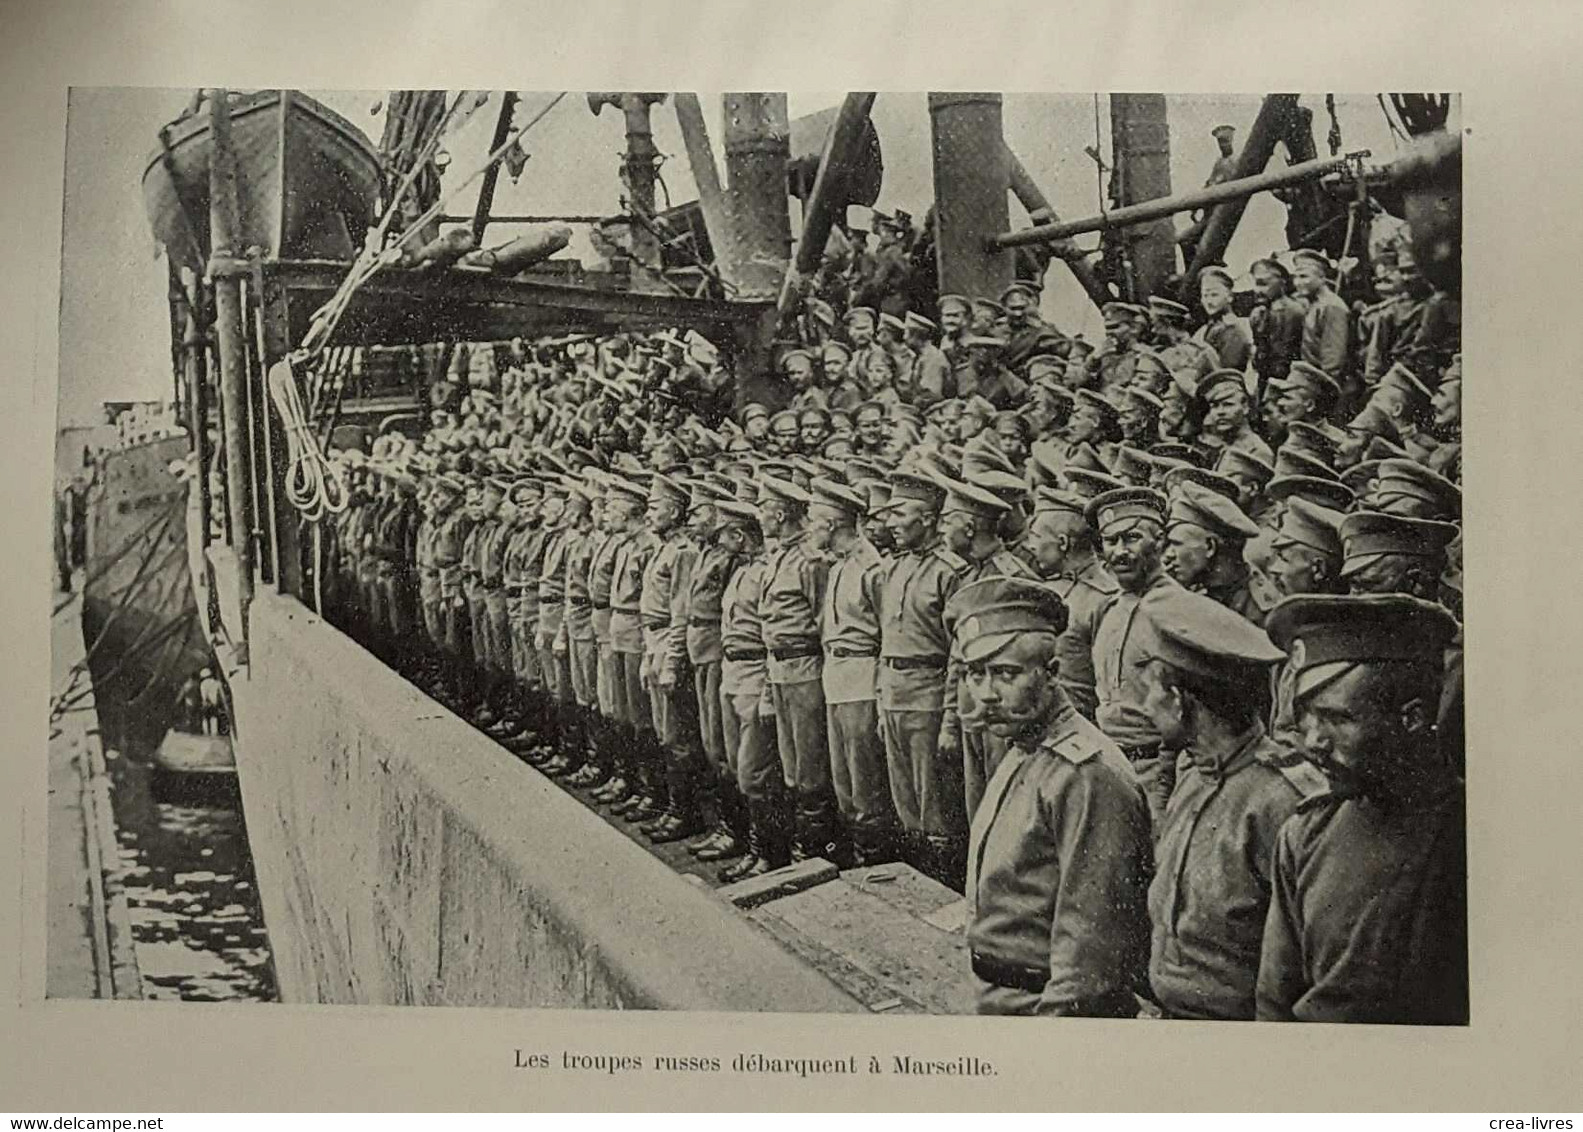 La Mutinerie De La Courteline - Les Régiments Russes Révoltés En 1917 Au Centre De La France - Storia